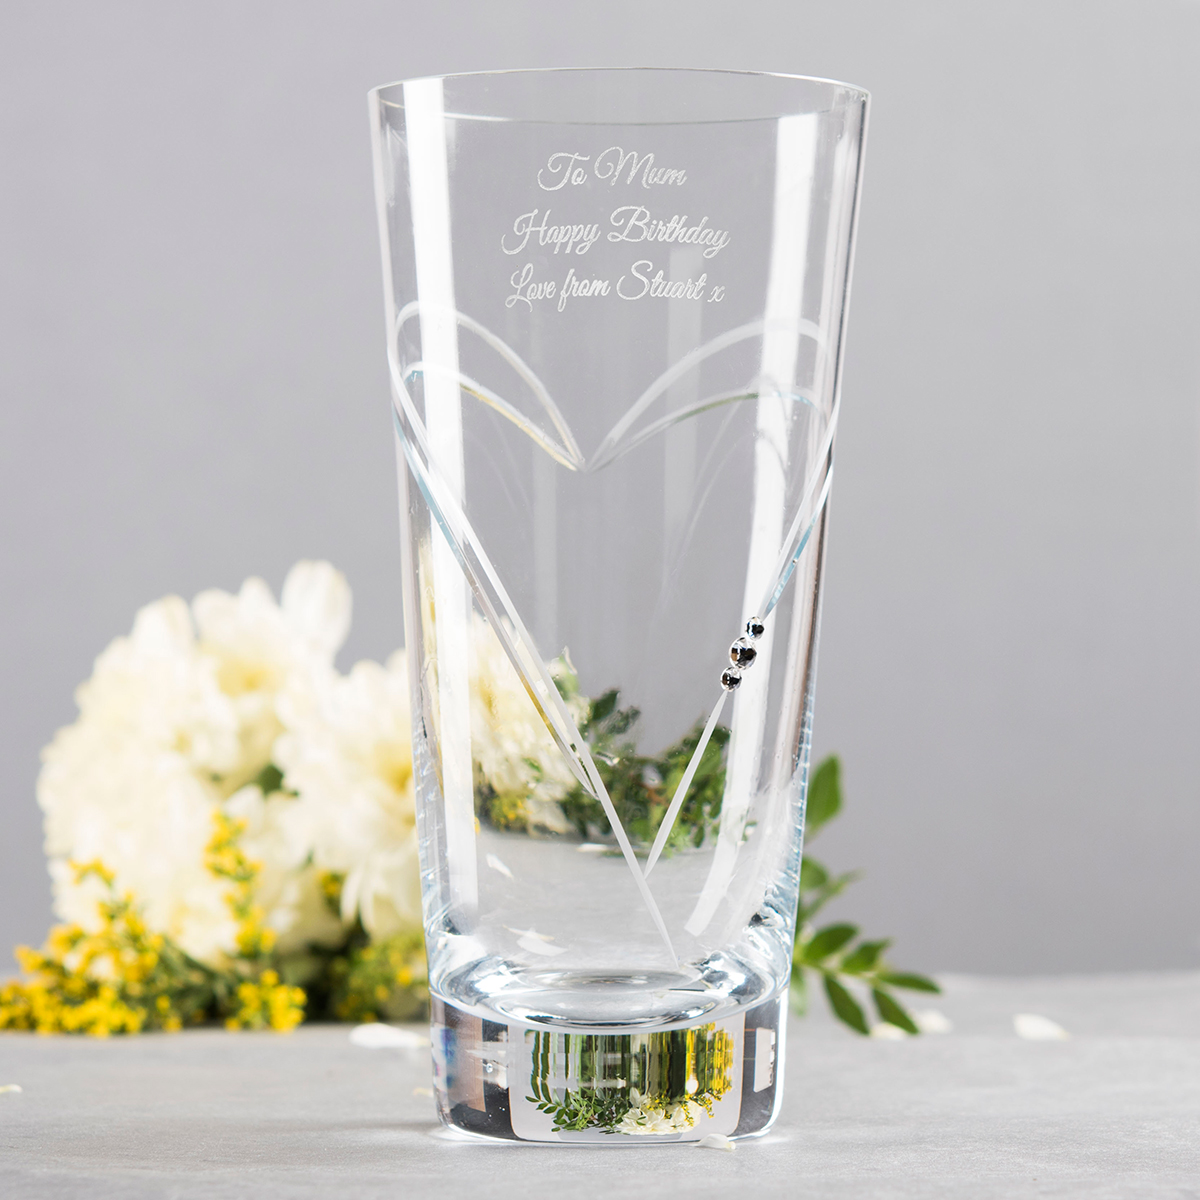 Engraved Swarovski Elements Glass Vase - Wedding